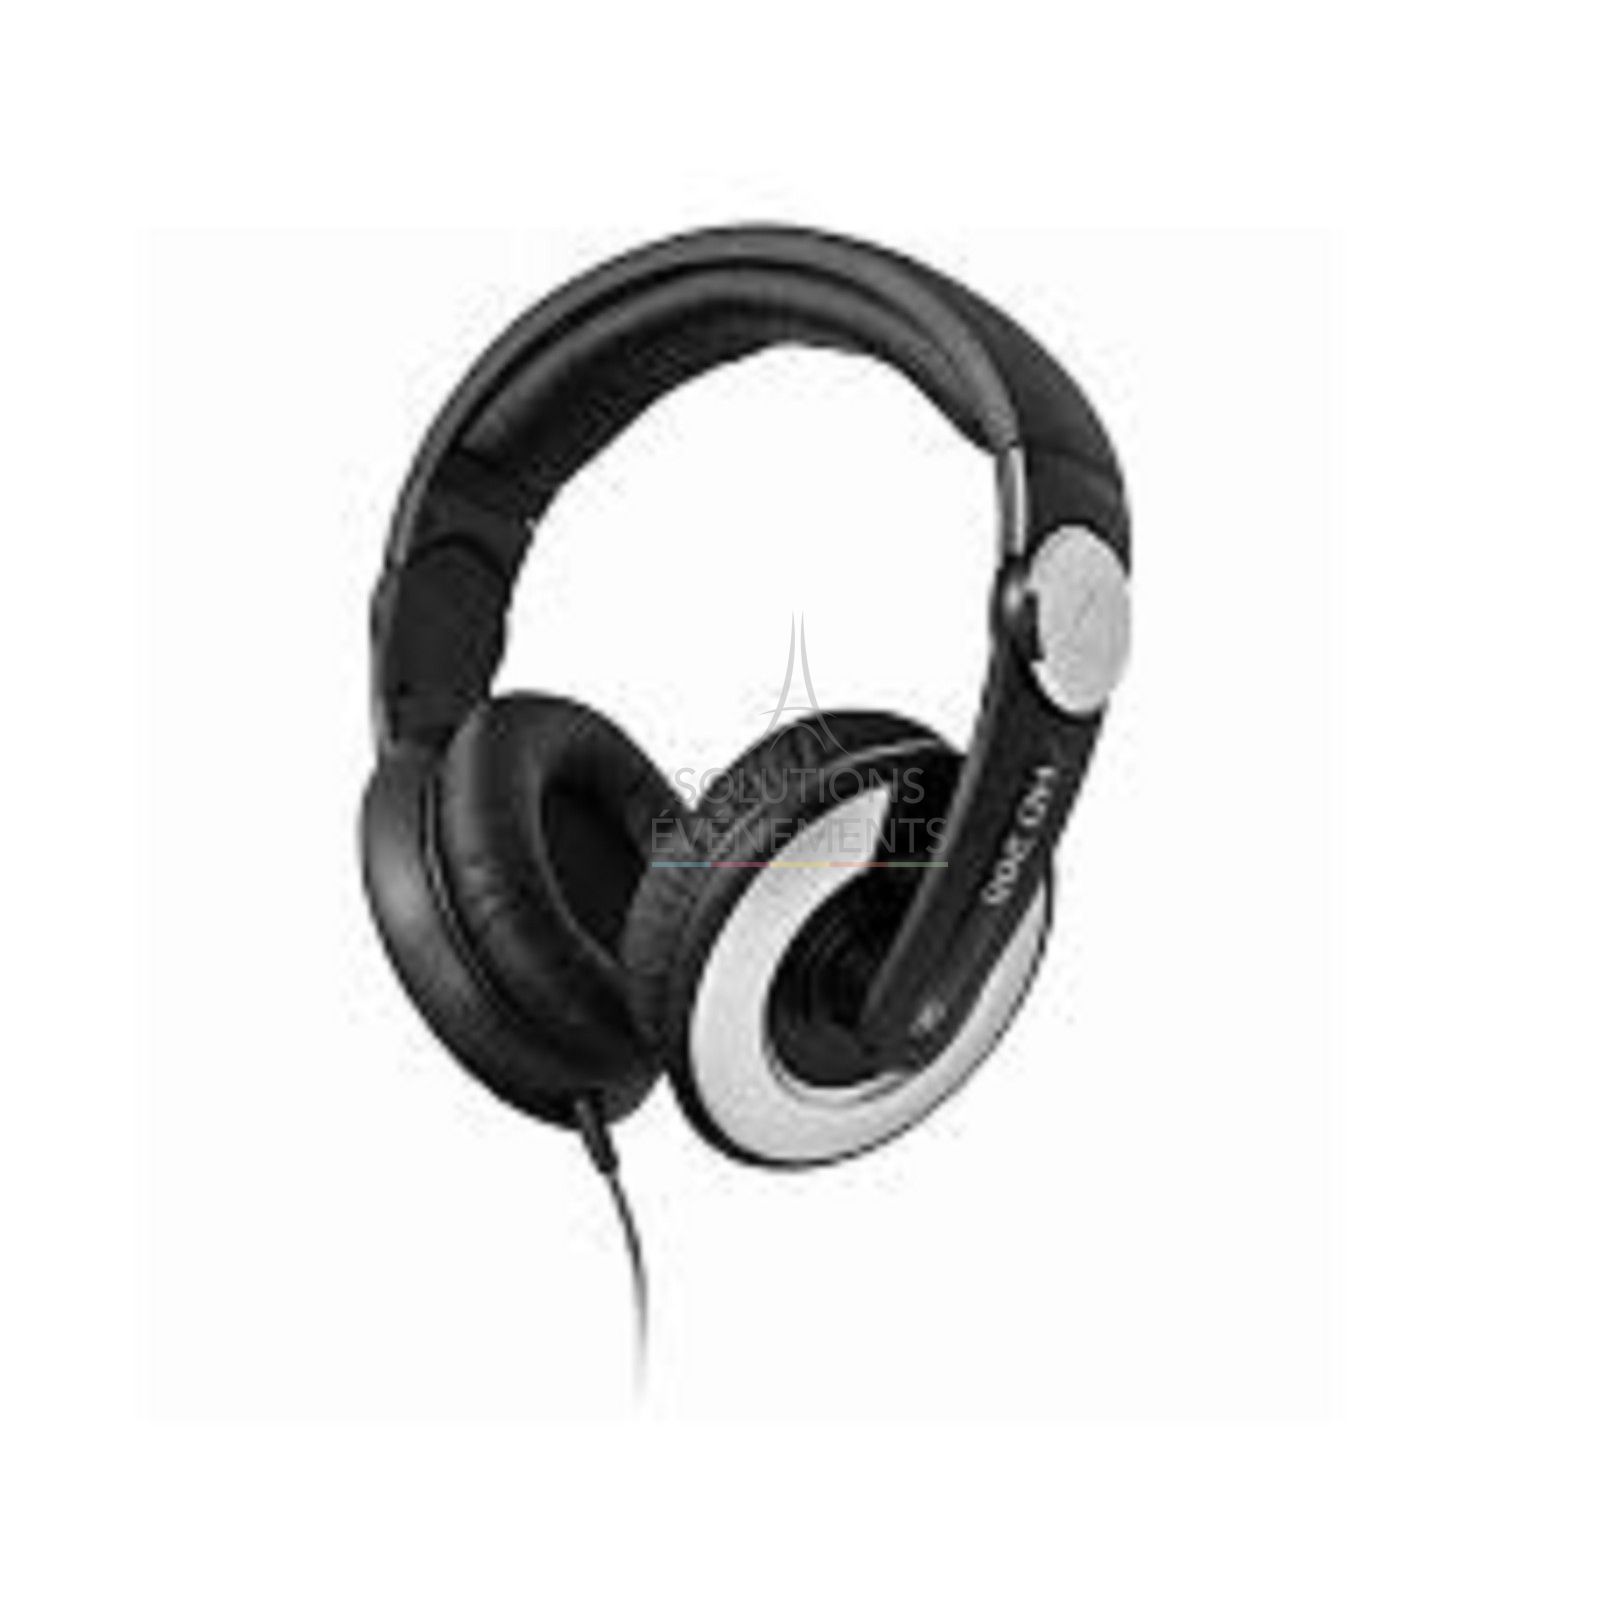 Sennheiser HD 205 DJ headphones rental